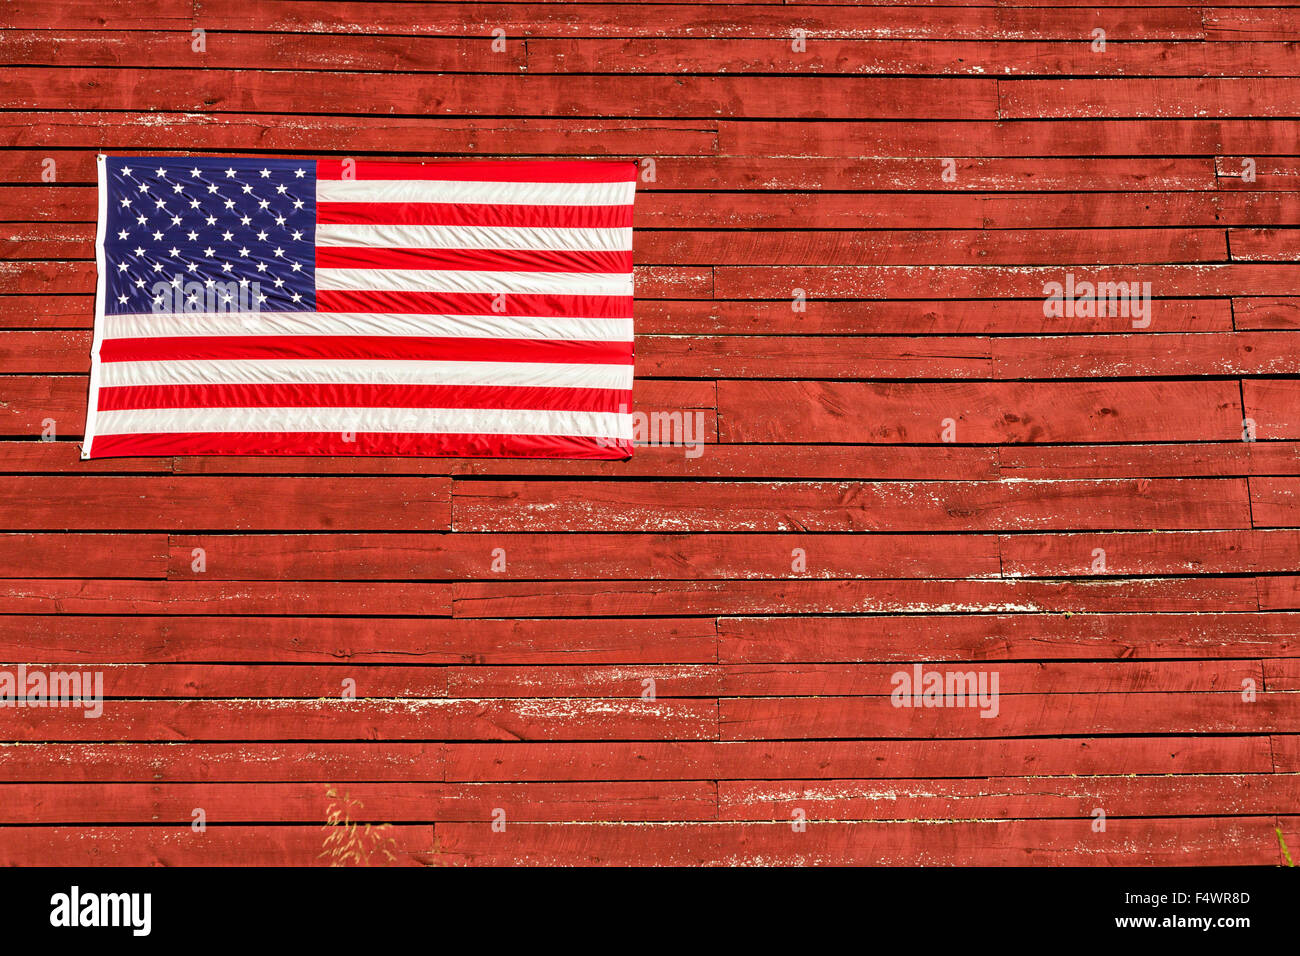 Eine alte hölzerne Scheune dekoriert mit einer amerikanischen Flagge auf den Quilt Pfaden im Preise Creek, North Carolina. Quilt Wanderwege Ehre handgemachte quilt Designs der ländlichen Appalachian Region. Stockfoto